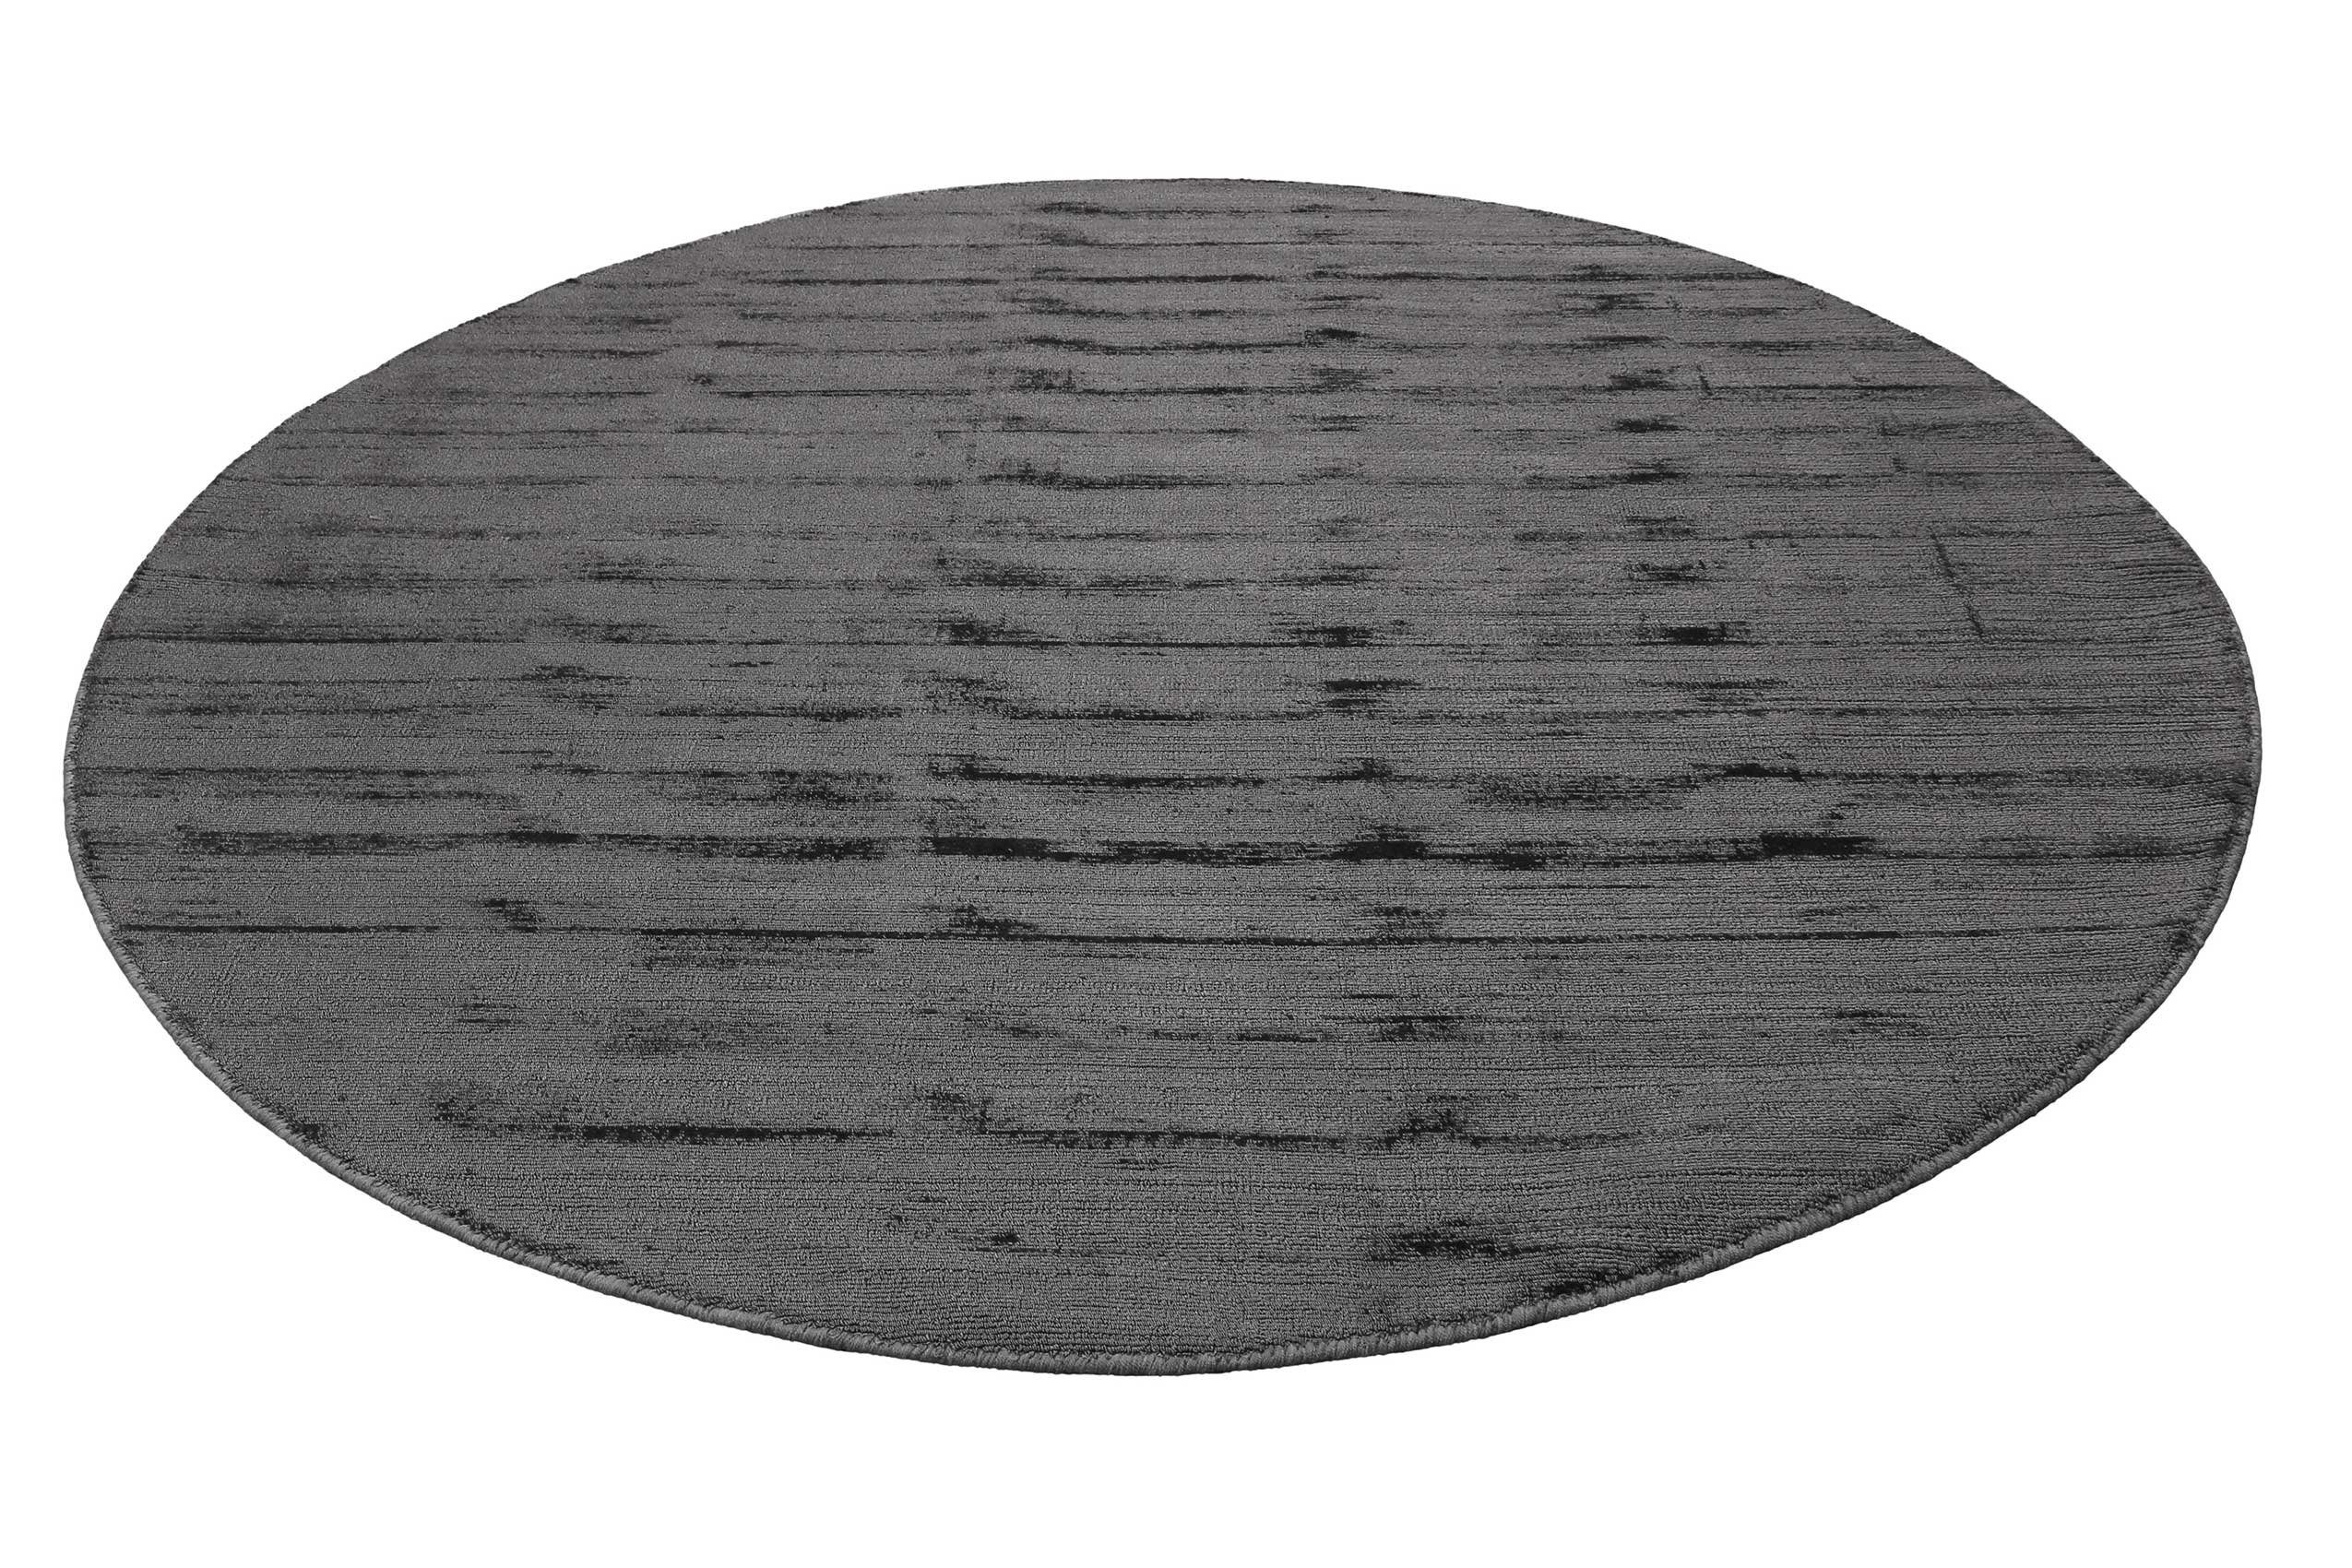 Teppich Gil, Esprit, rund, Höhe: 8 mm, handgewebt, seidig glänzend, schimmernde Farbbrillianz, Melangeeffekt grau